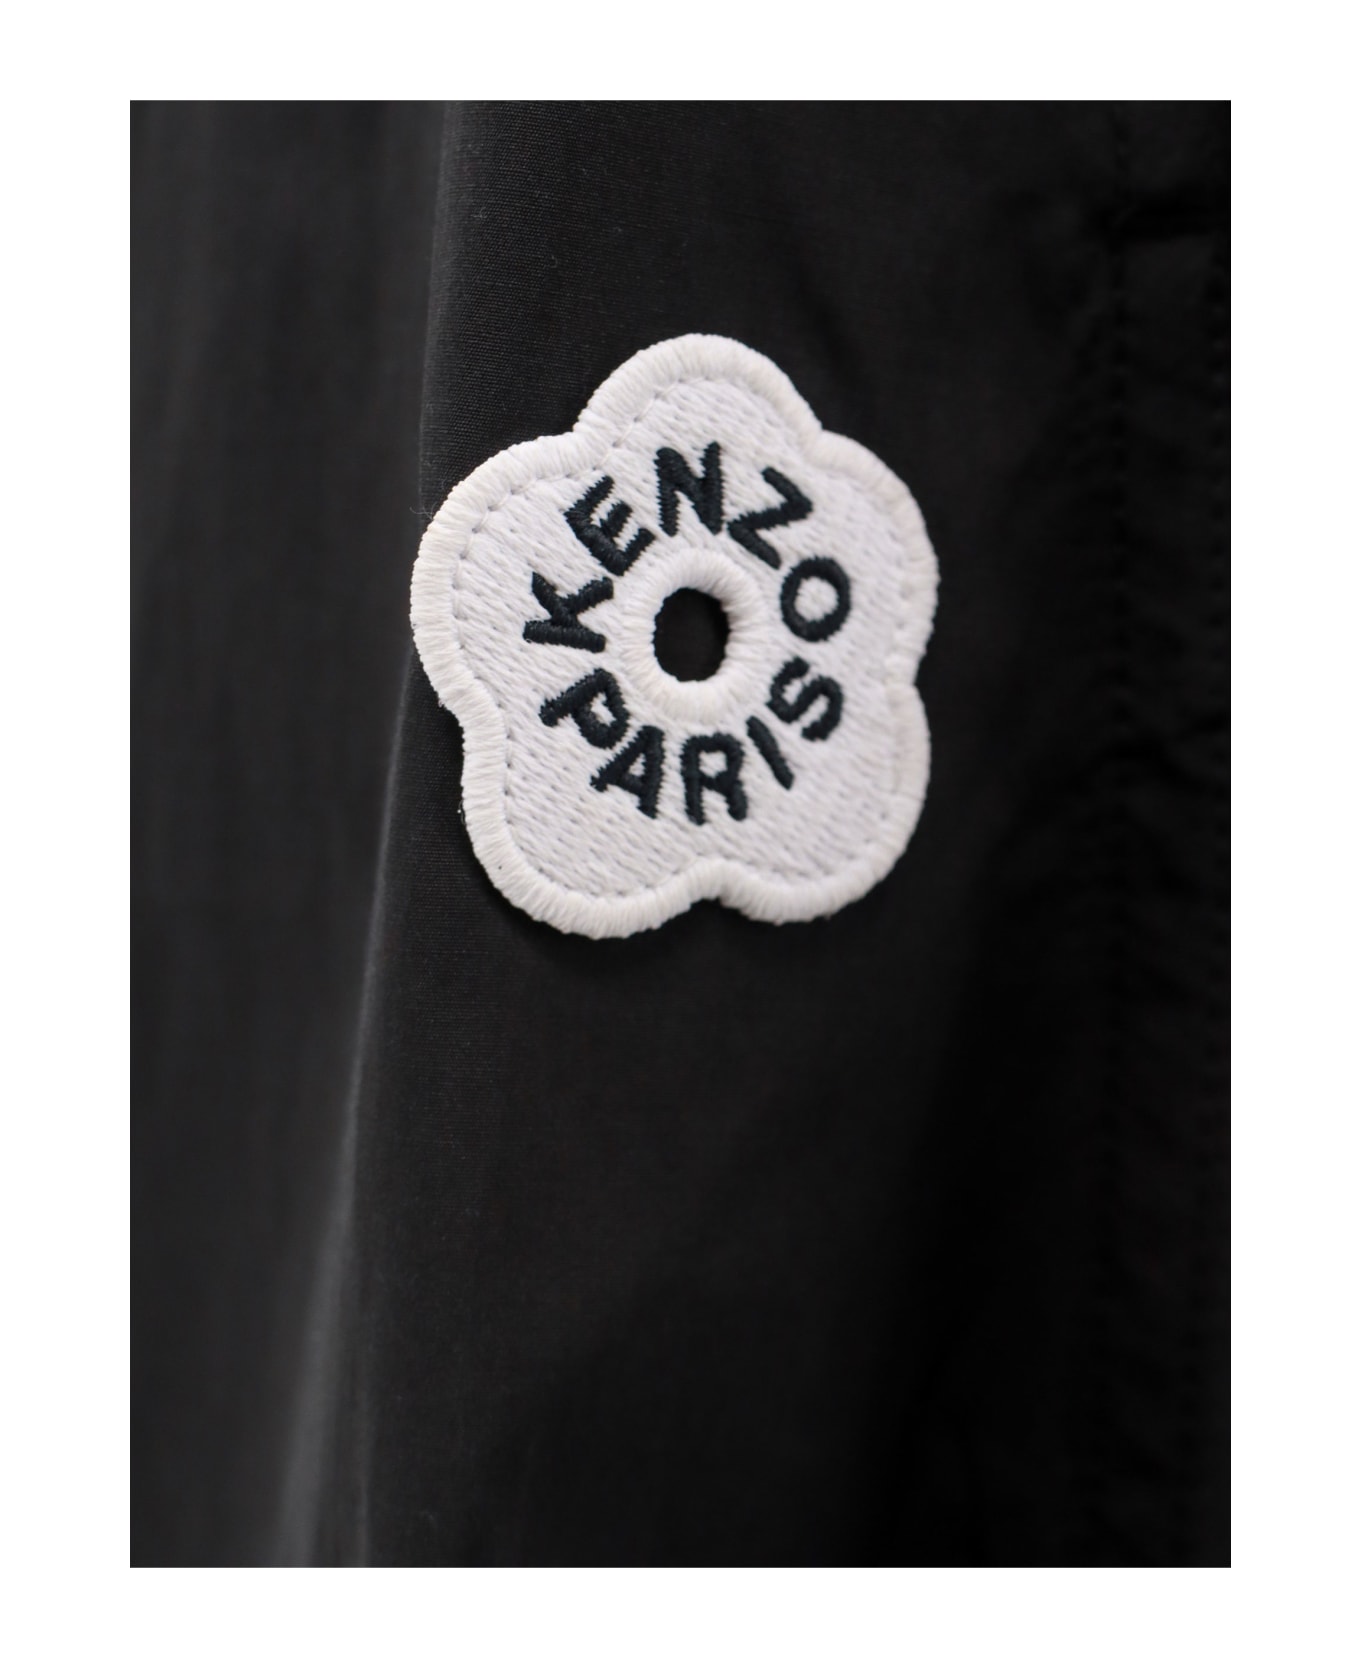 Kenzo Flower Waist Skirt - Black